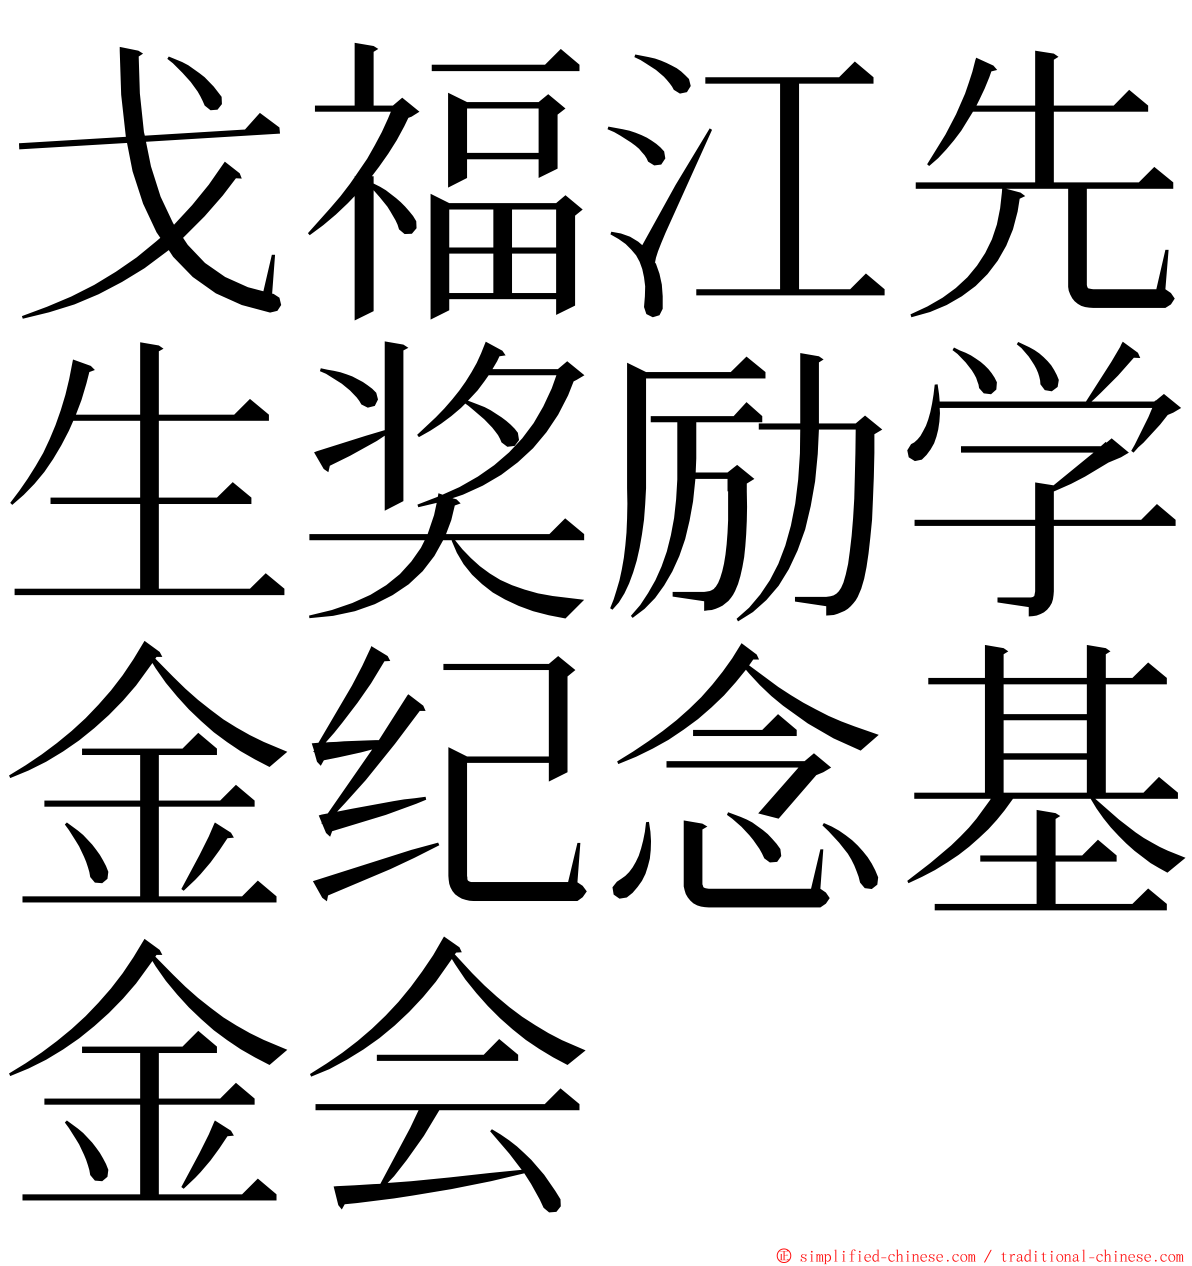 戈福江先生奖励学金纪念基金会 ming font